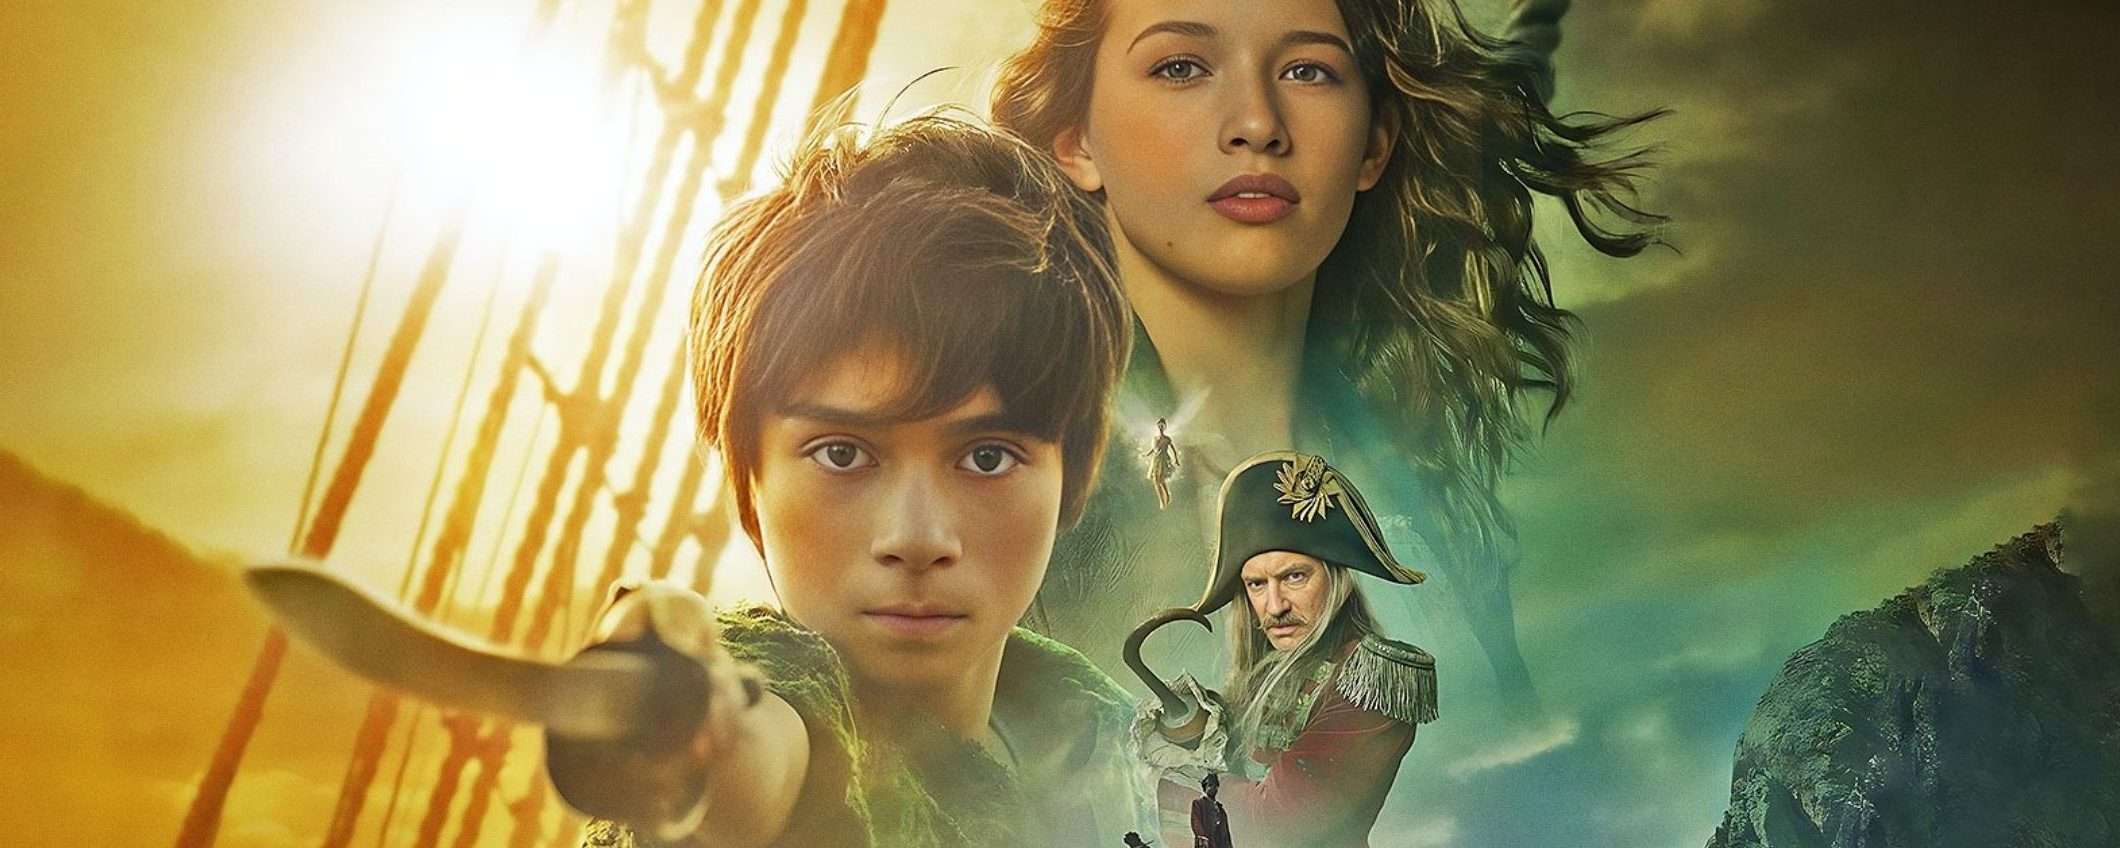 Peter Pan & Wendy: come cambia il nuovo film rispetto al libro